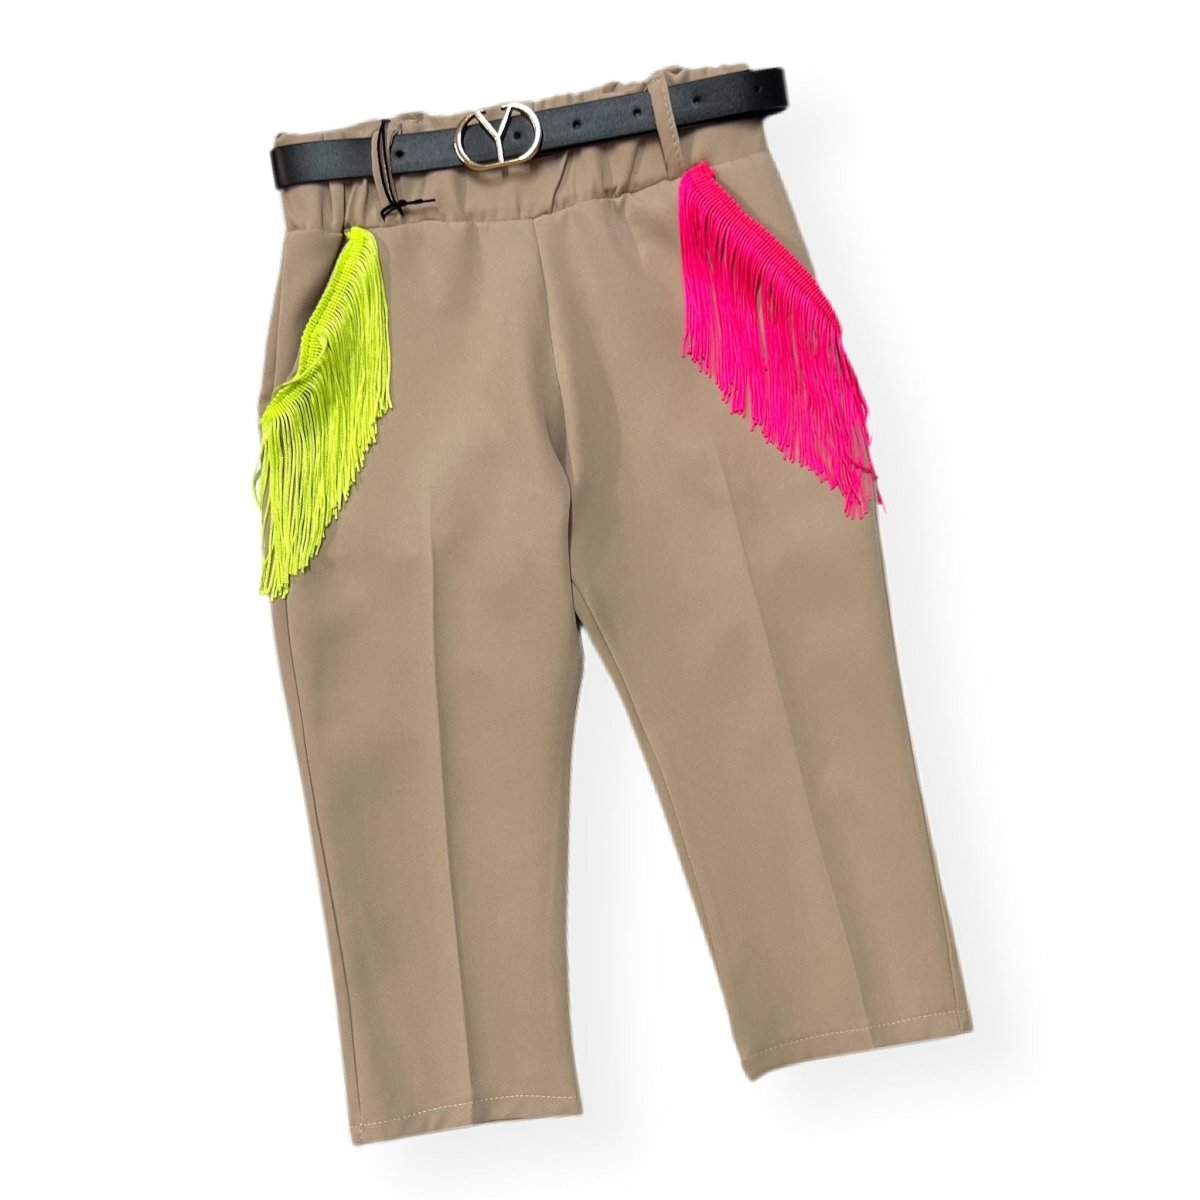 Pantalone Capri con Frange leggero Bimba - Mstore016 - Pantalone Bimba - Granada